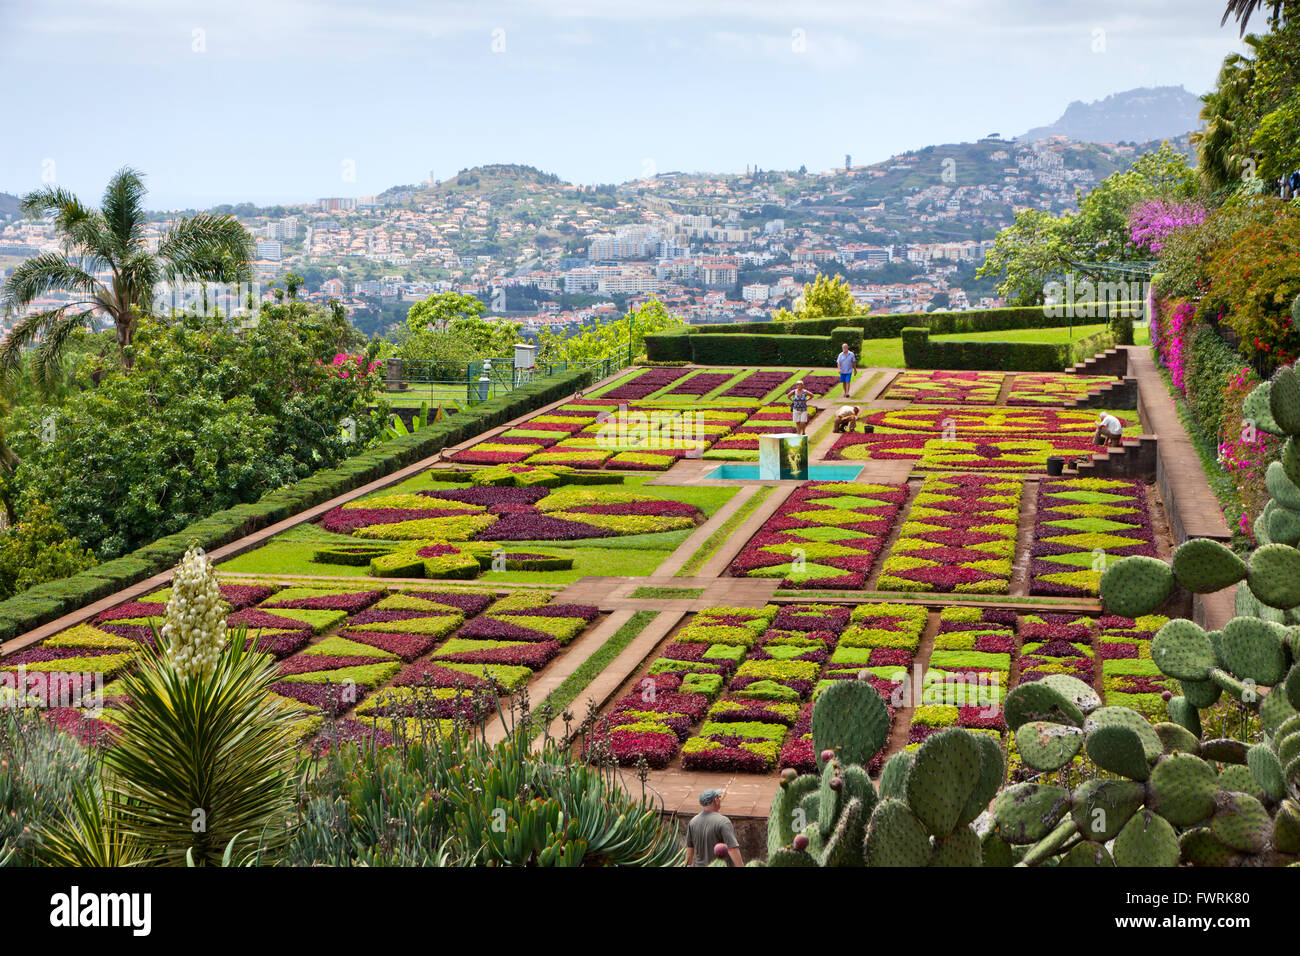 Tropicale Giardino Botanico nella città di Funchal, l'isola di Madeira, Portogallo Foto Stock